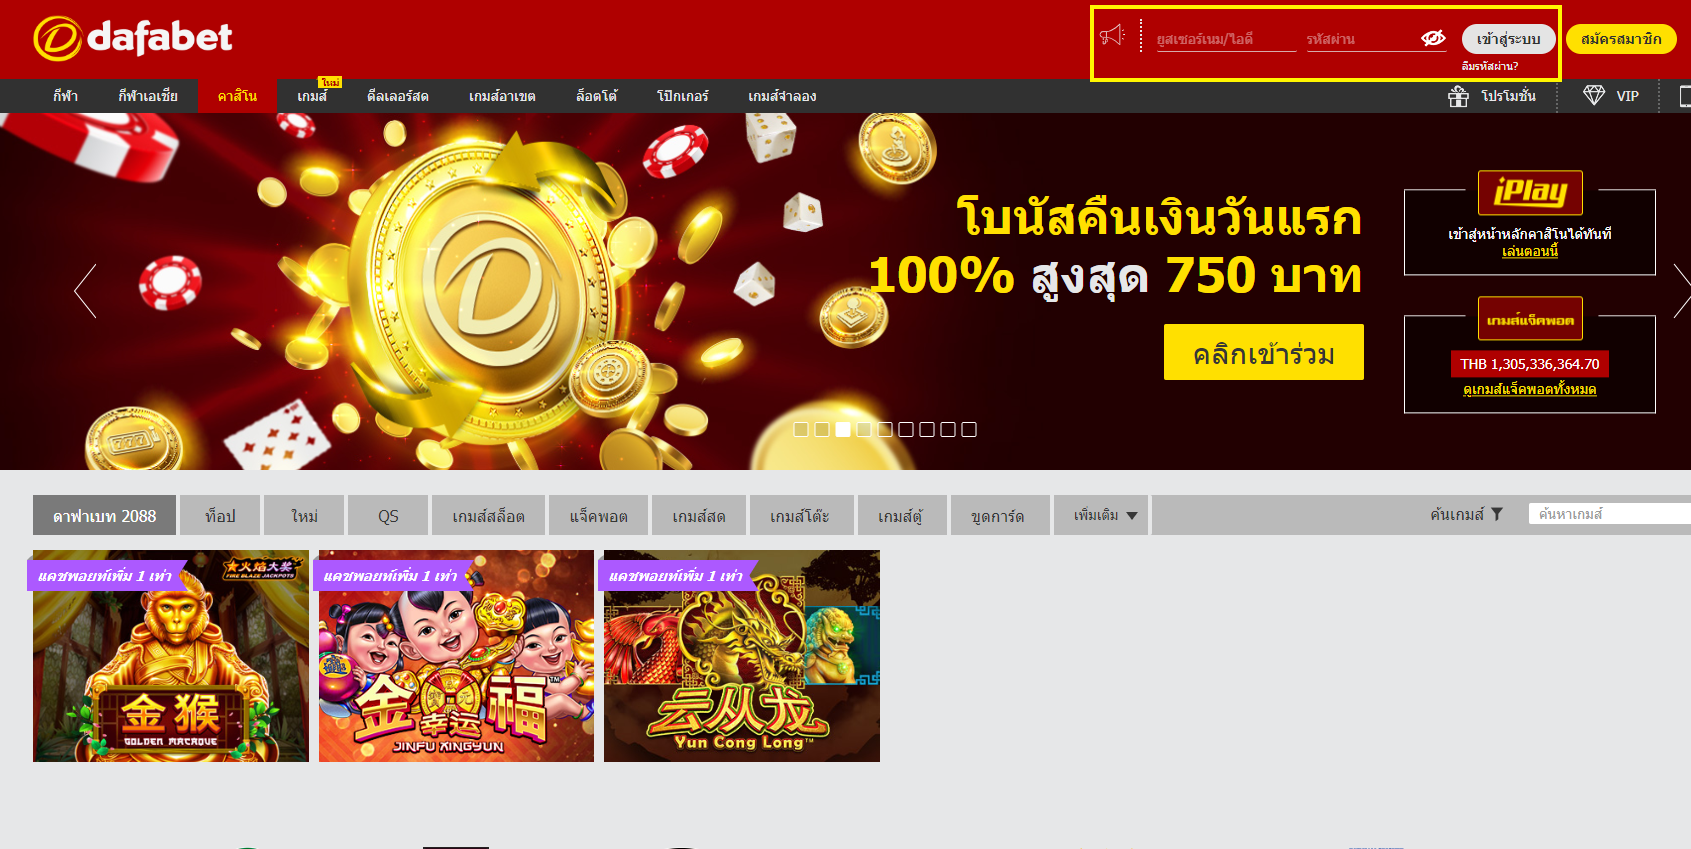 ล็อคอินเข้าสู่ระบบ Dafabet - casinoออนไลน์